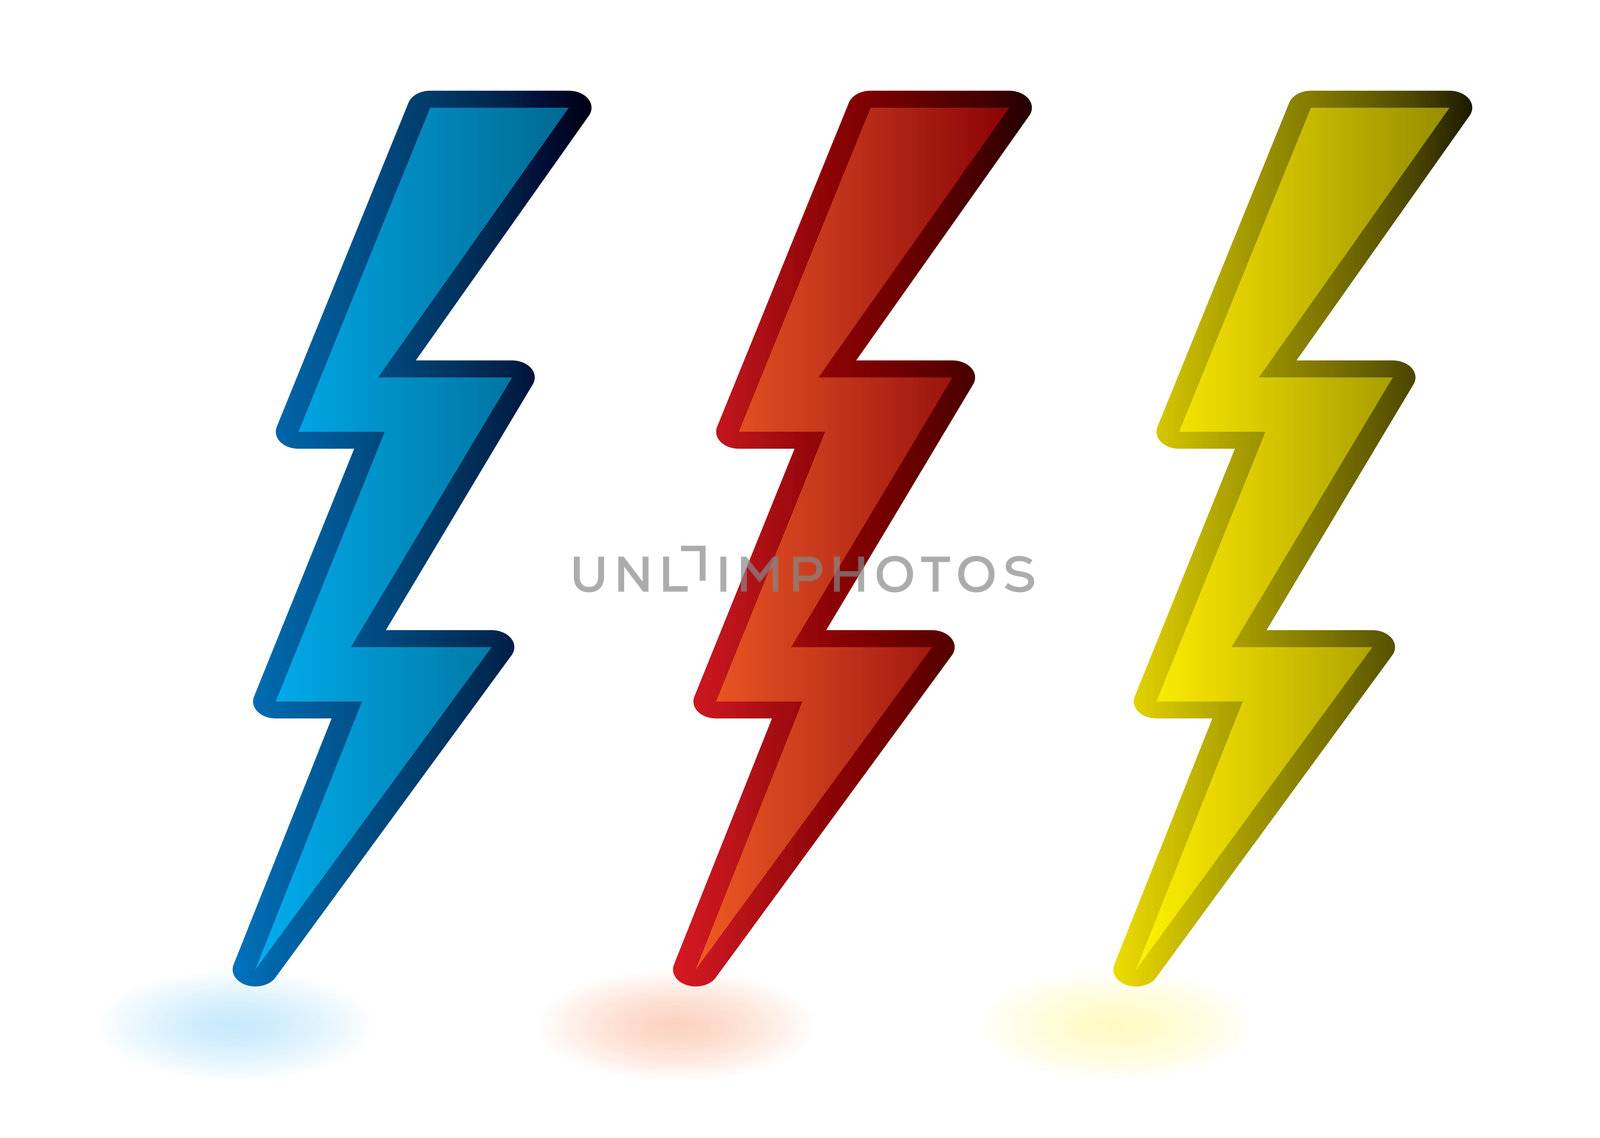 Lightning bolts by nicemonkey